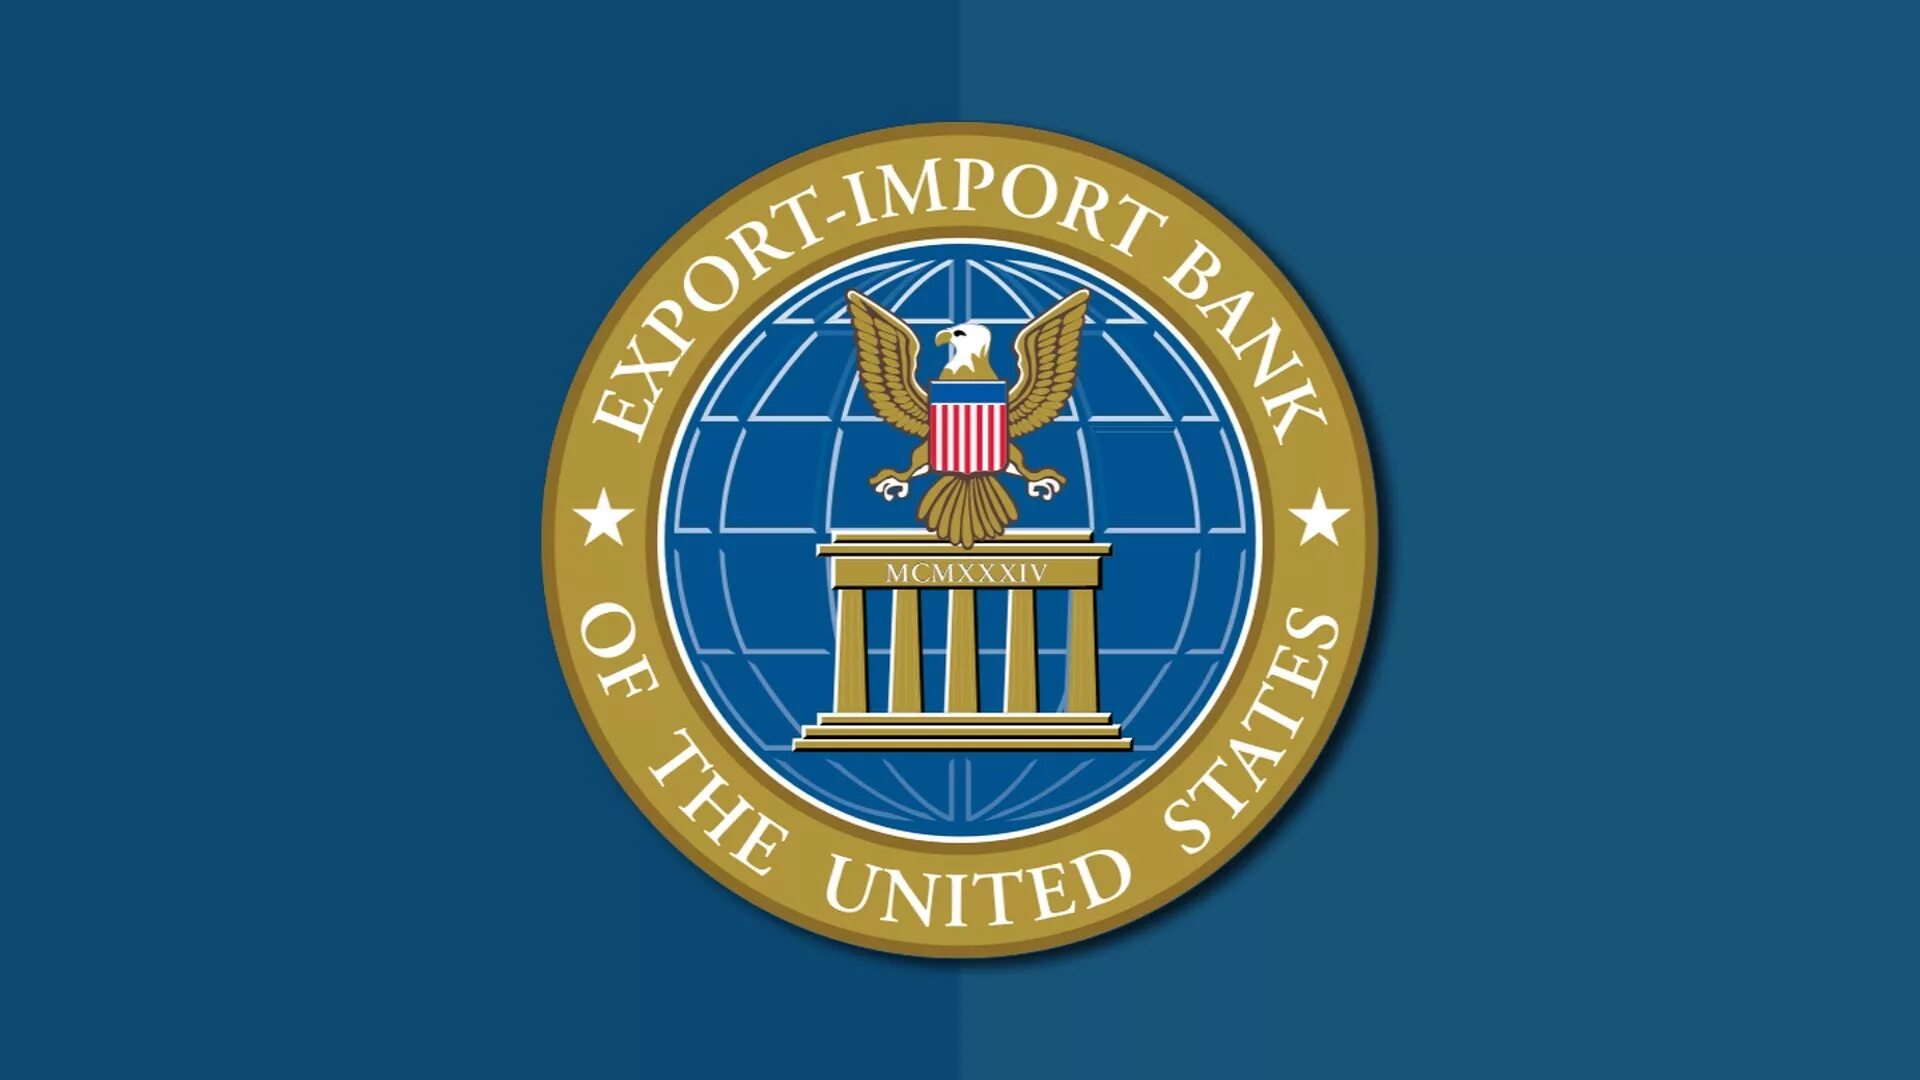 Экспортно-импортный банк США. Суд лого США. Министерство торговли США. Export-Import Bank of the United States. Export import bank